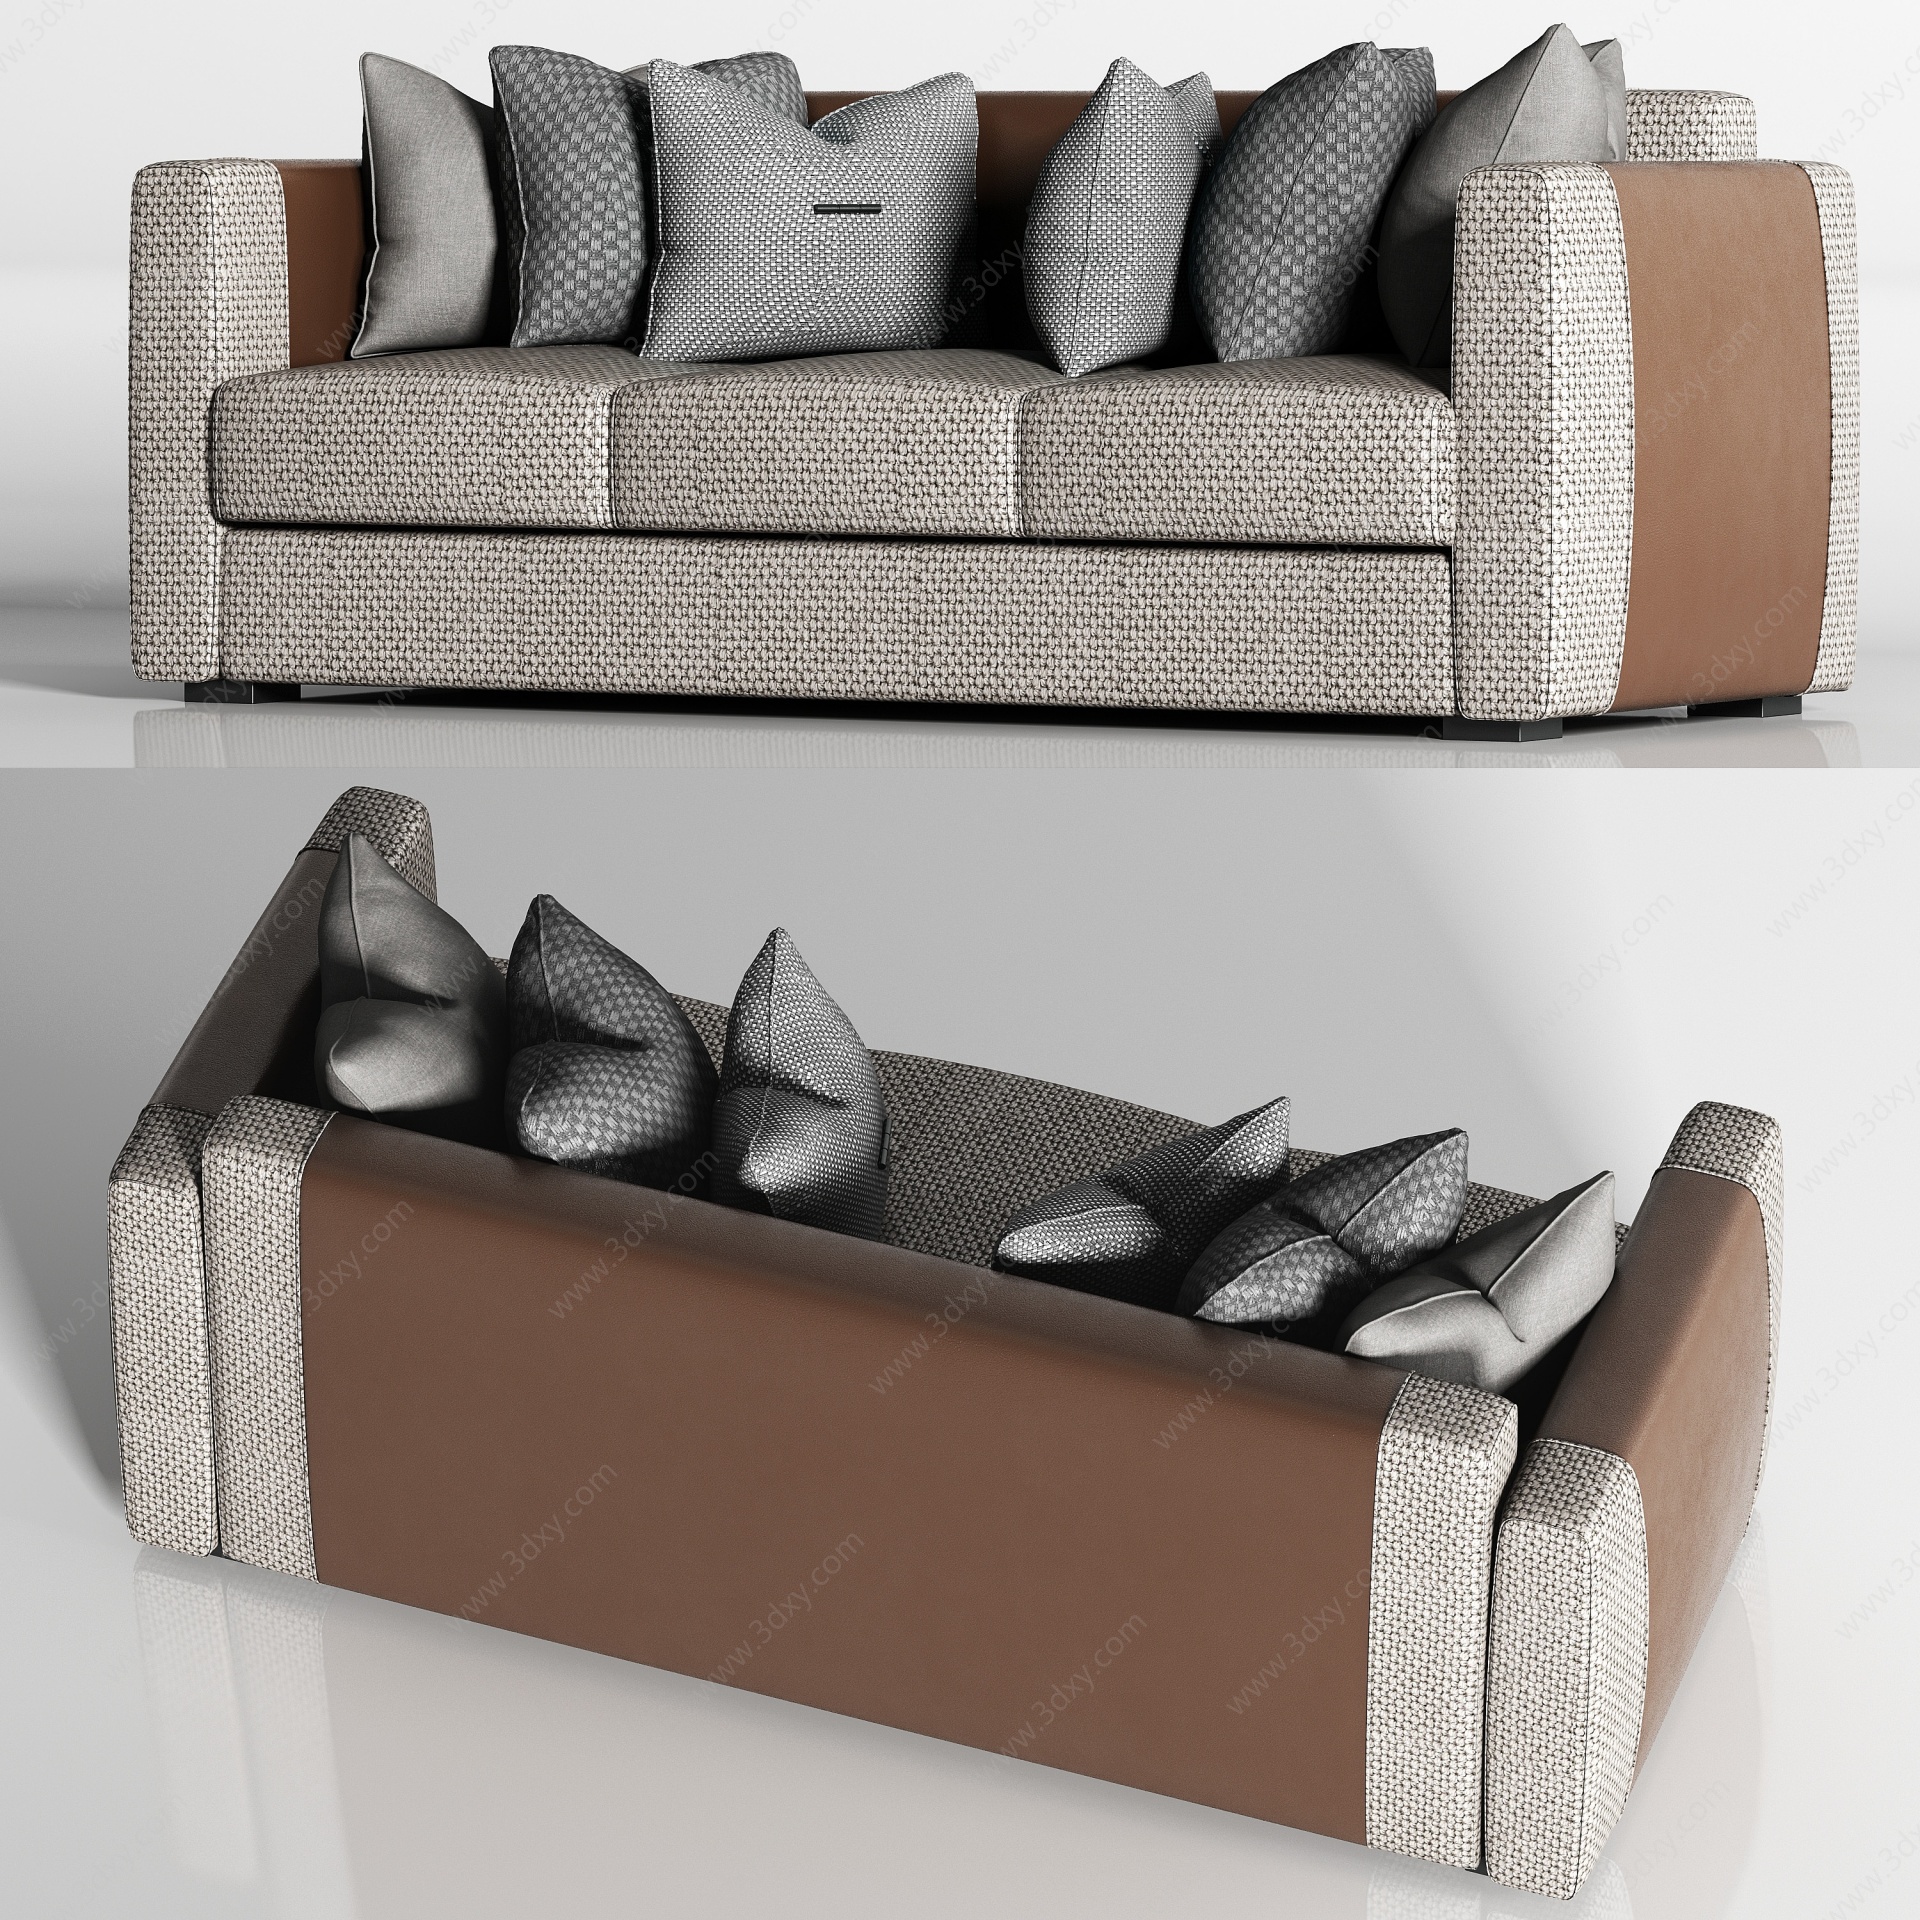 轻奢皮革绒布双人沙发枕头3D模型